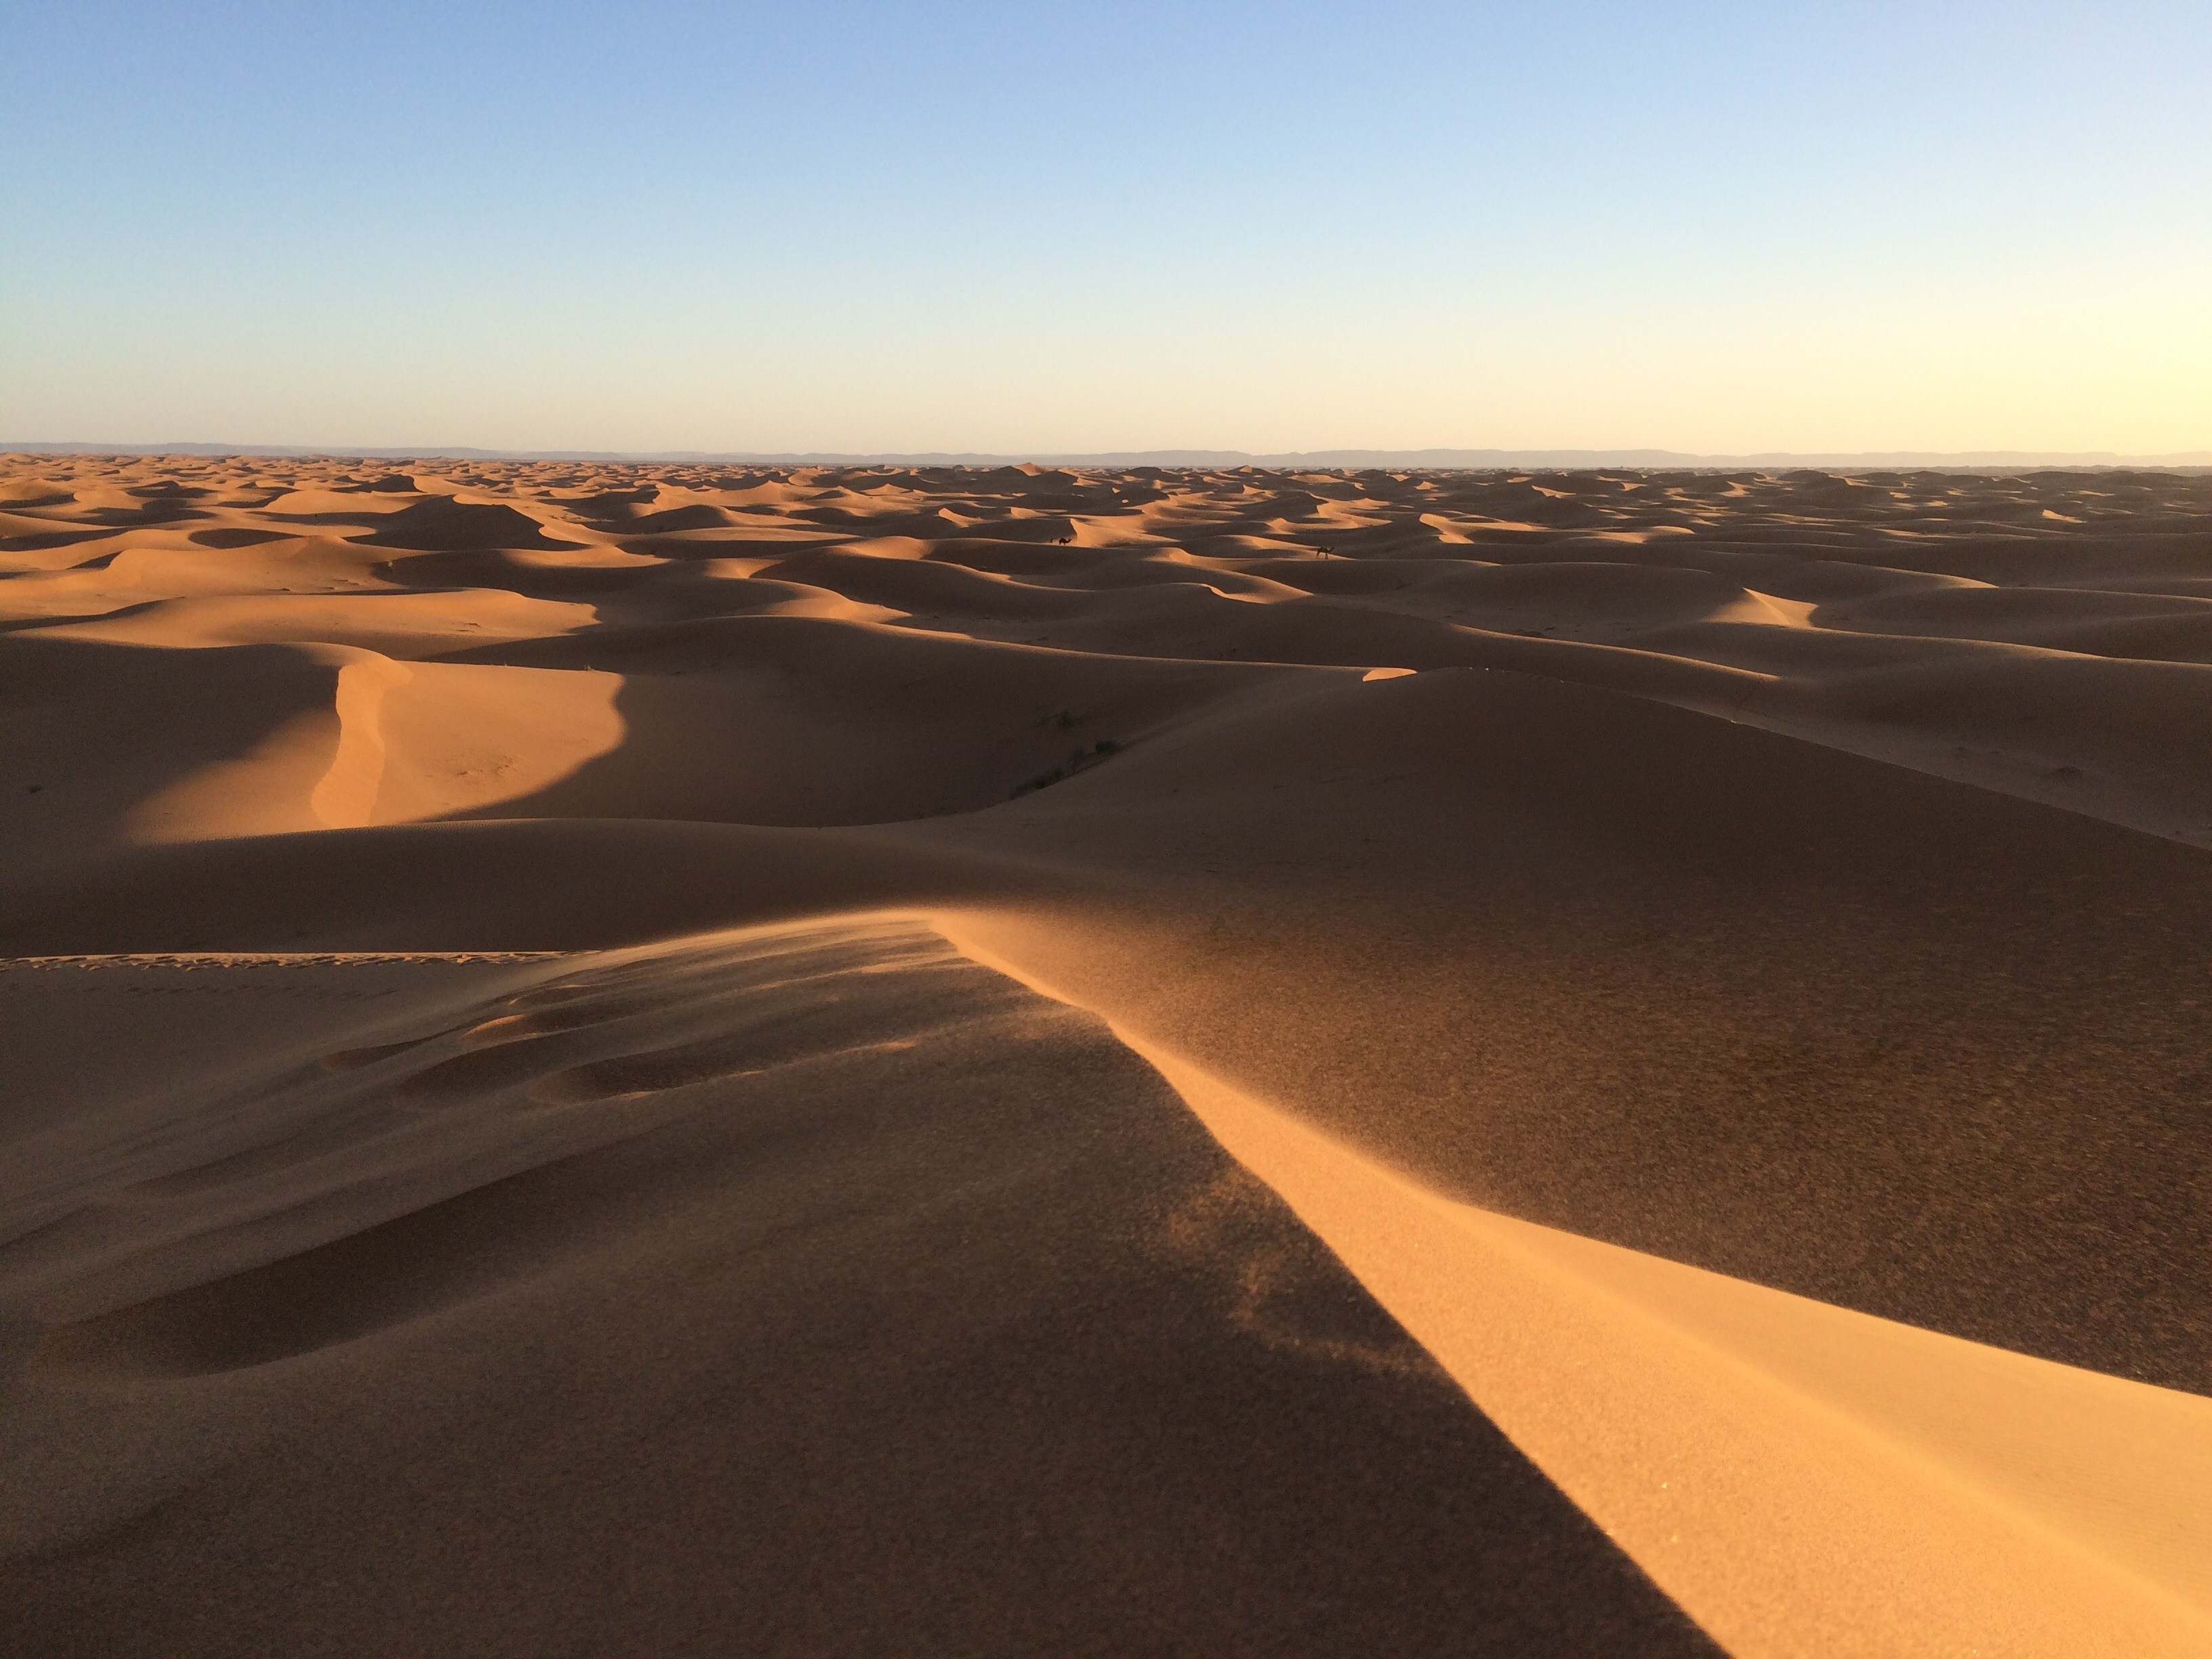 General 3264x2448 landscape nature desert sand dunes camels